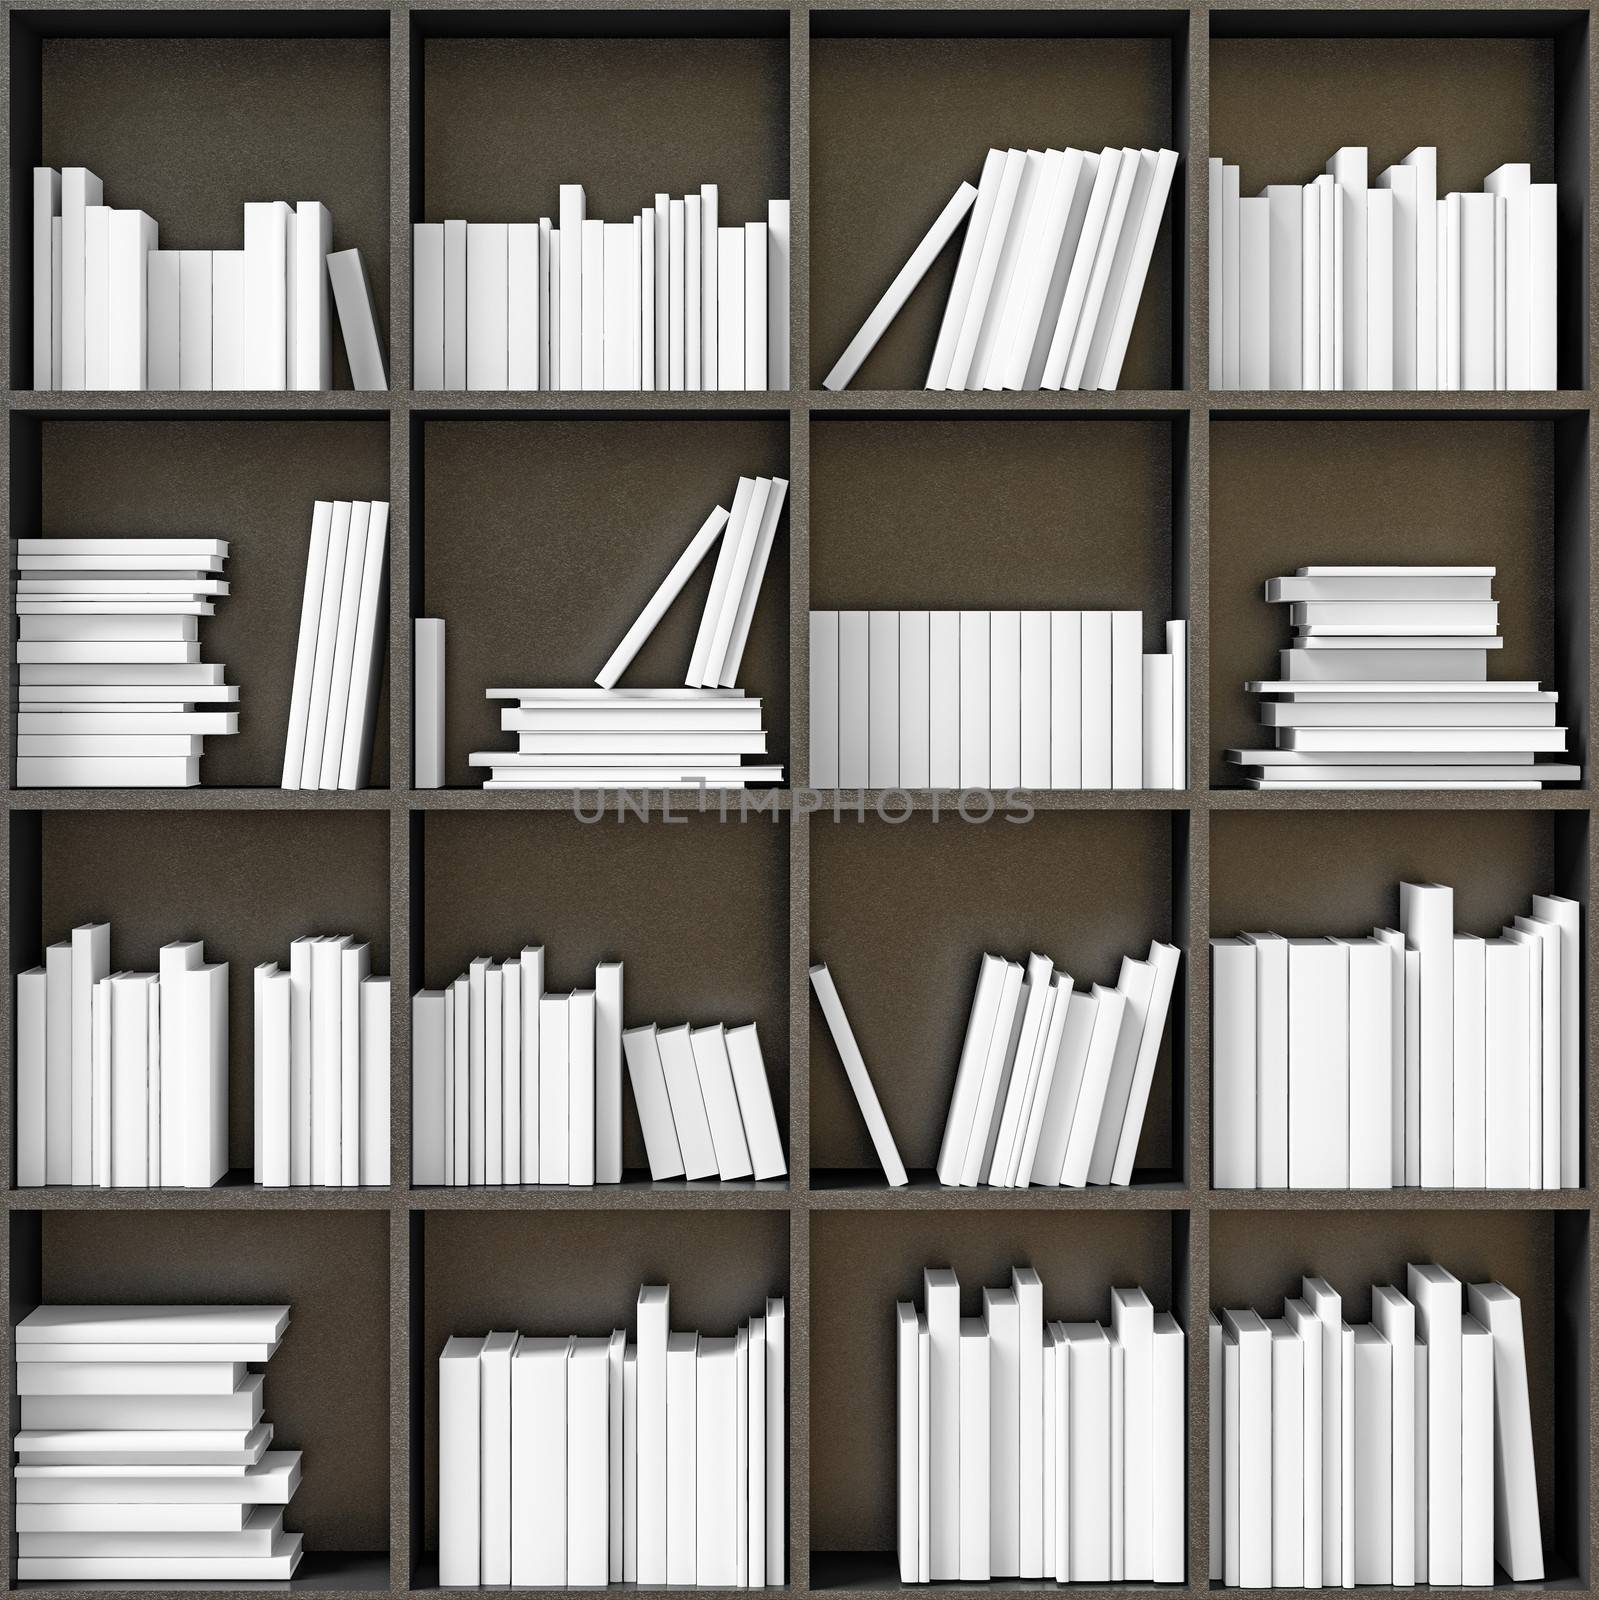 black bookshelves with white books (illustrated concept) 